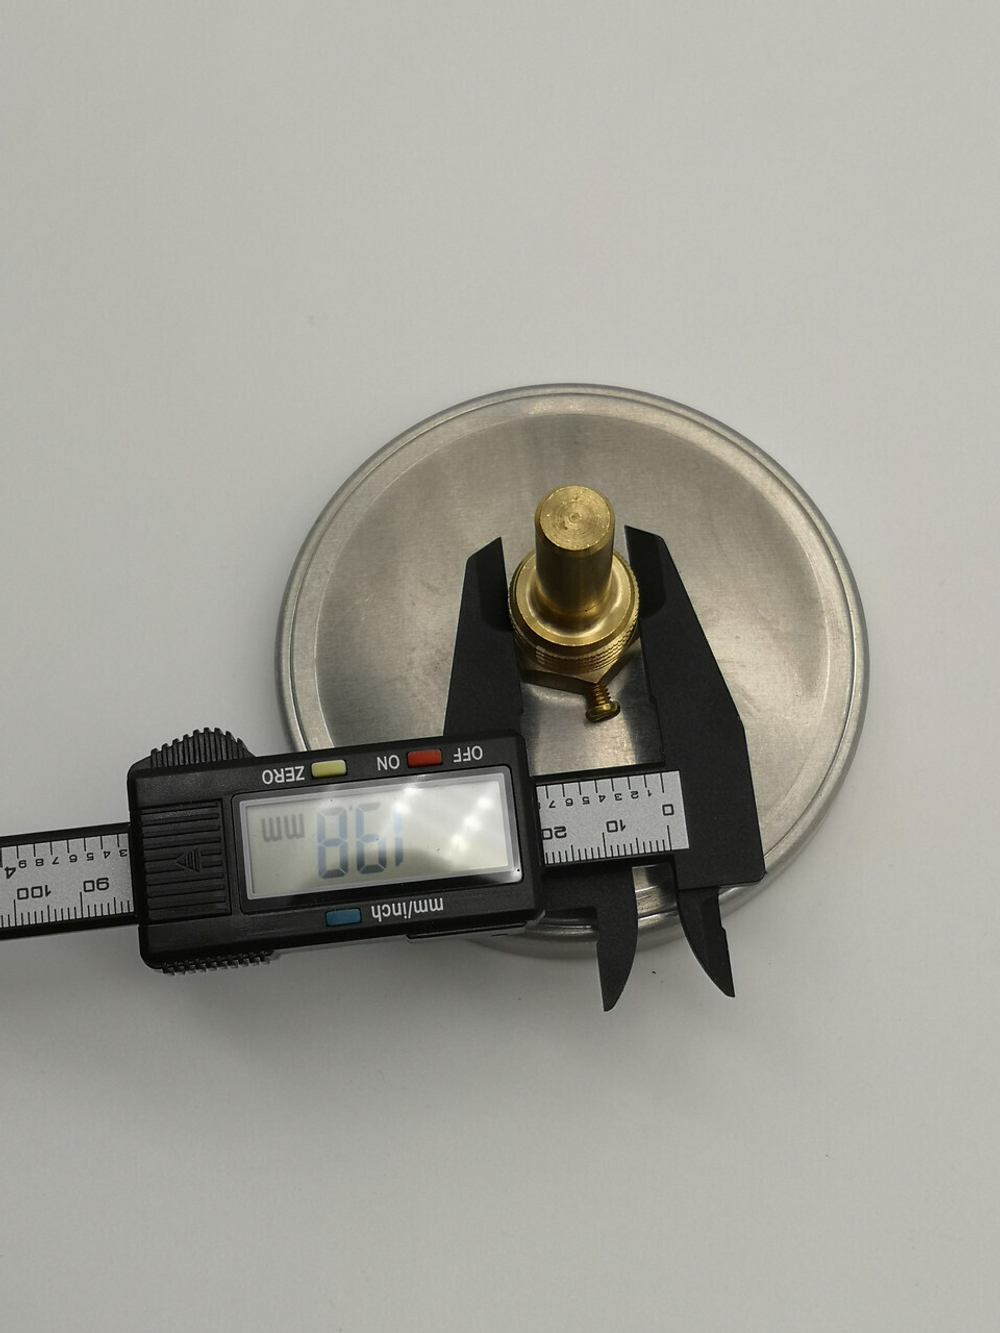 Термометр Wika от 0 до 120 гр С 40мм диаметр циферблата 100мм